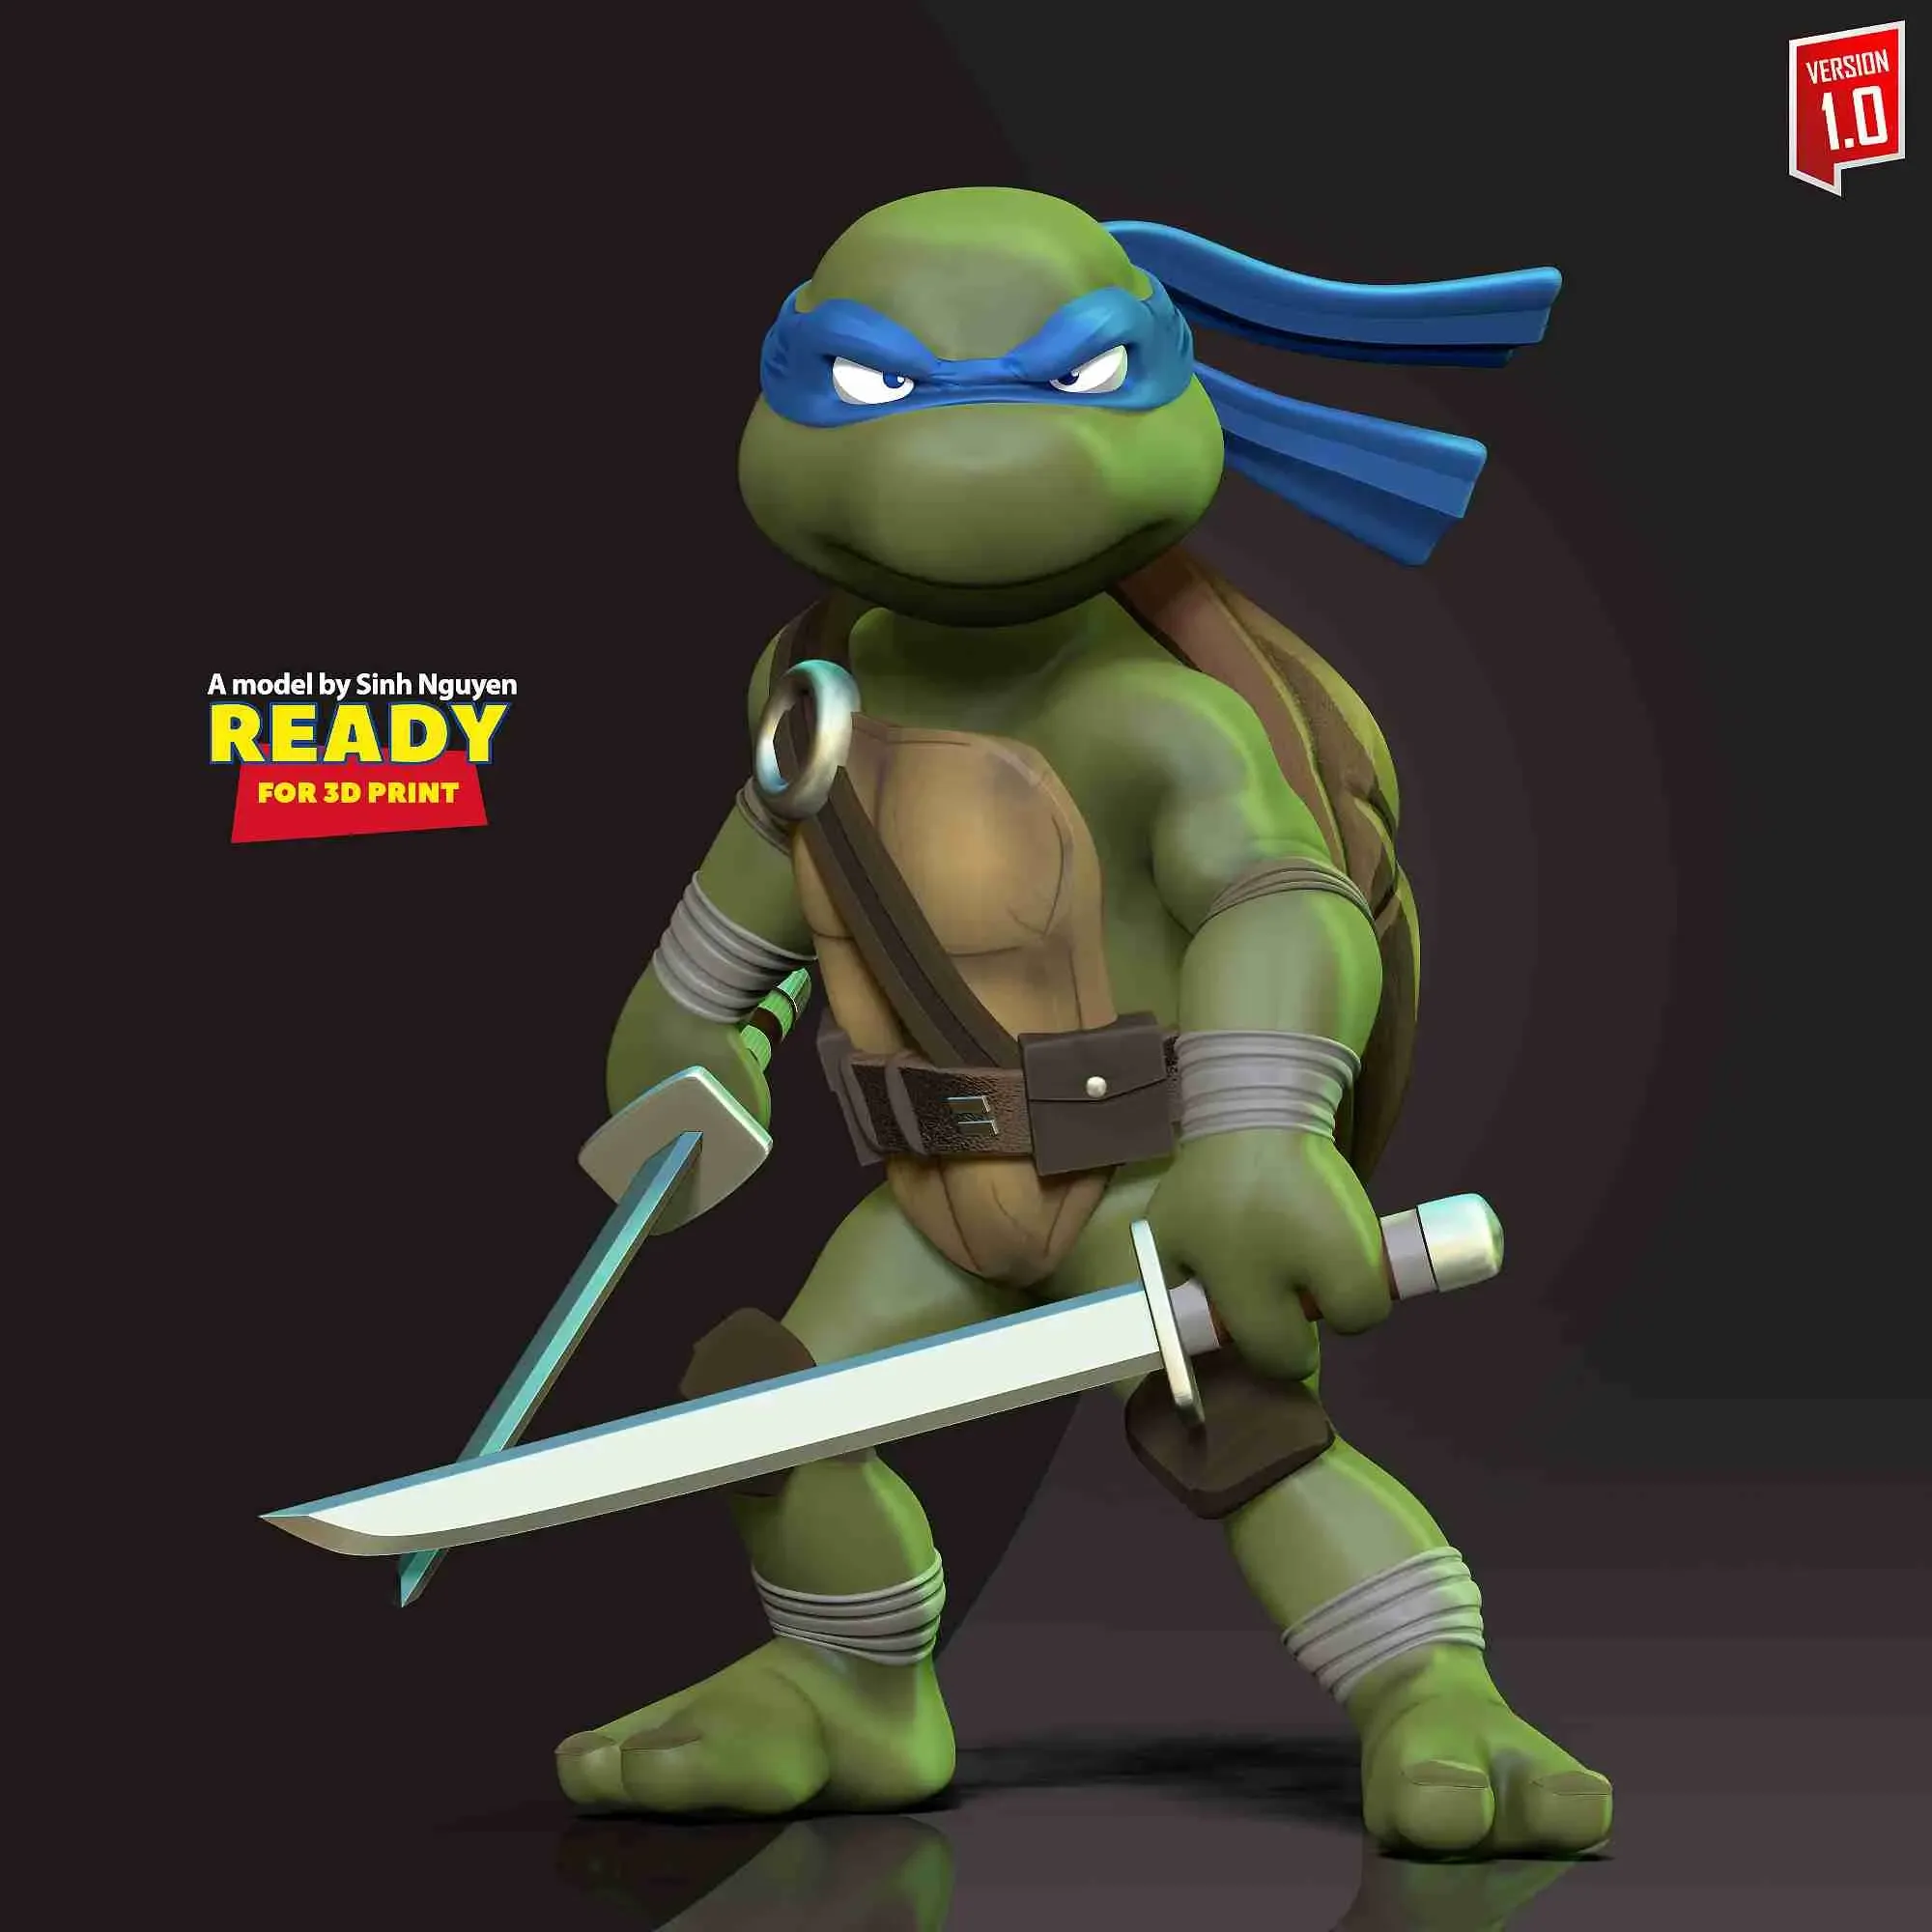 Leonardo - Teenage Mutant Ninja Turtles